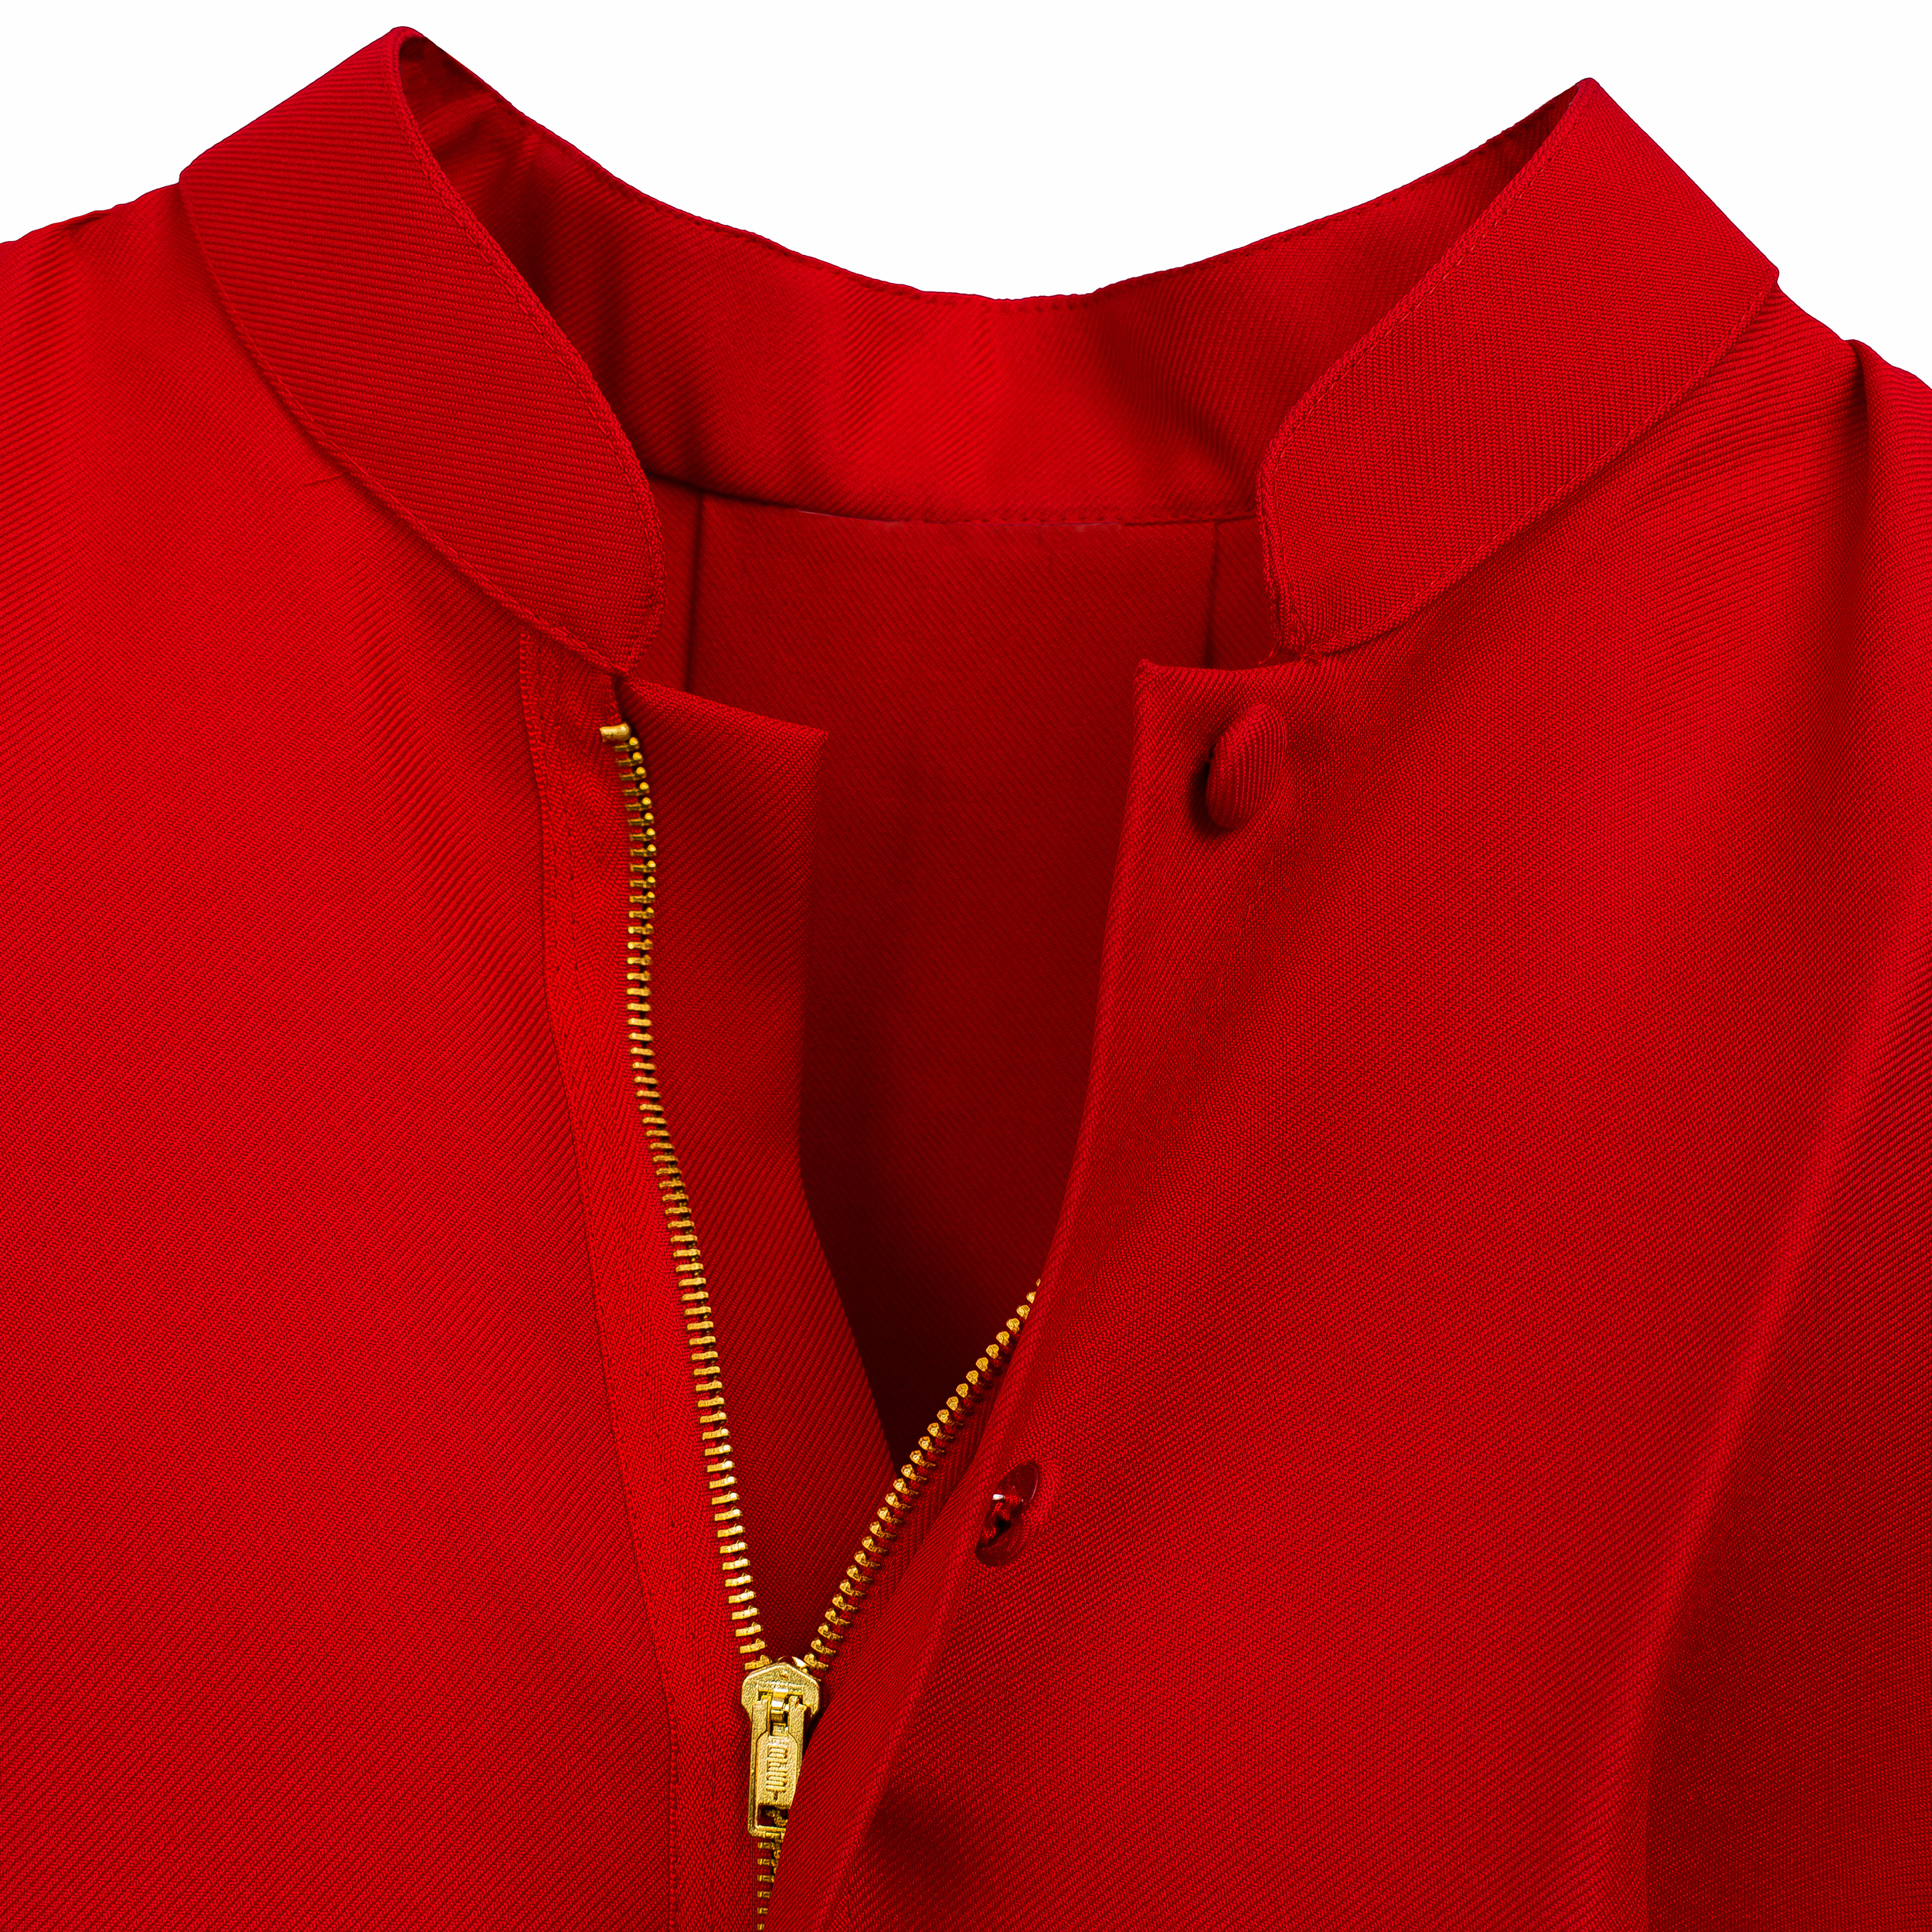 434 Traje acólito/ monaguillo en color rojo con roquete color blanco, cuello cuadrado encaje en mangas y parte baja; material algodón – San Rafael Arcángel